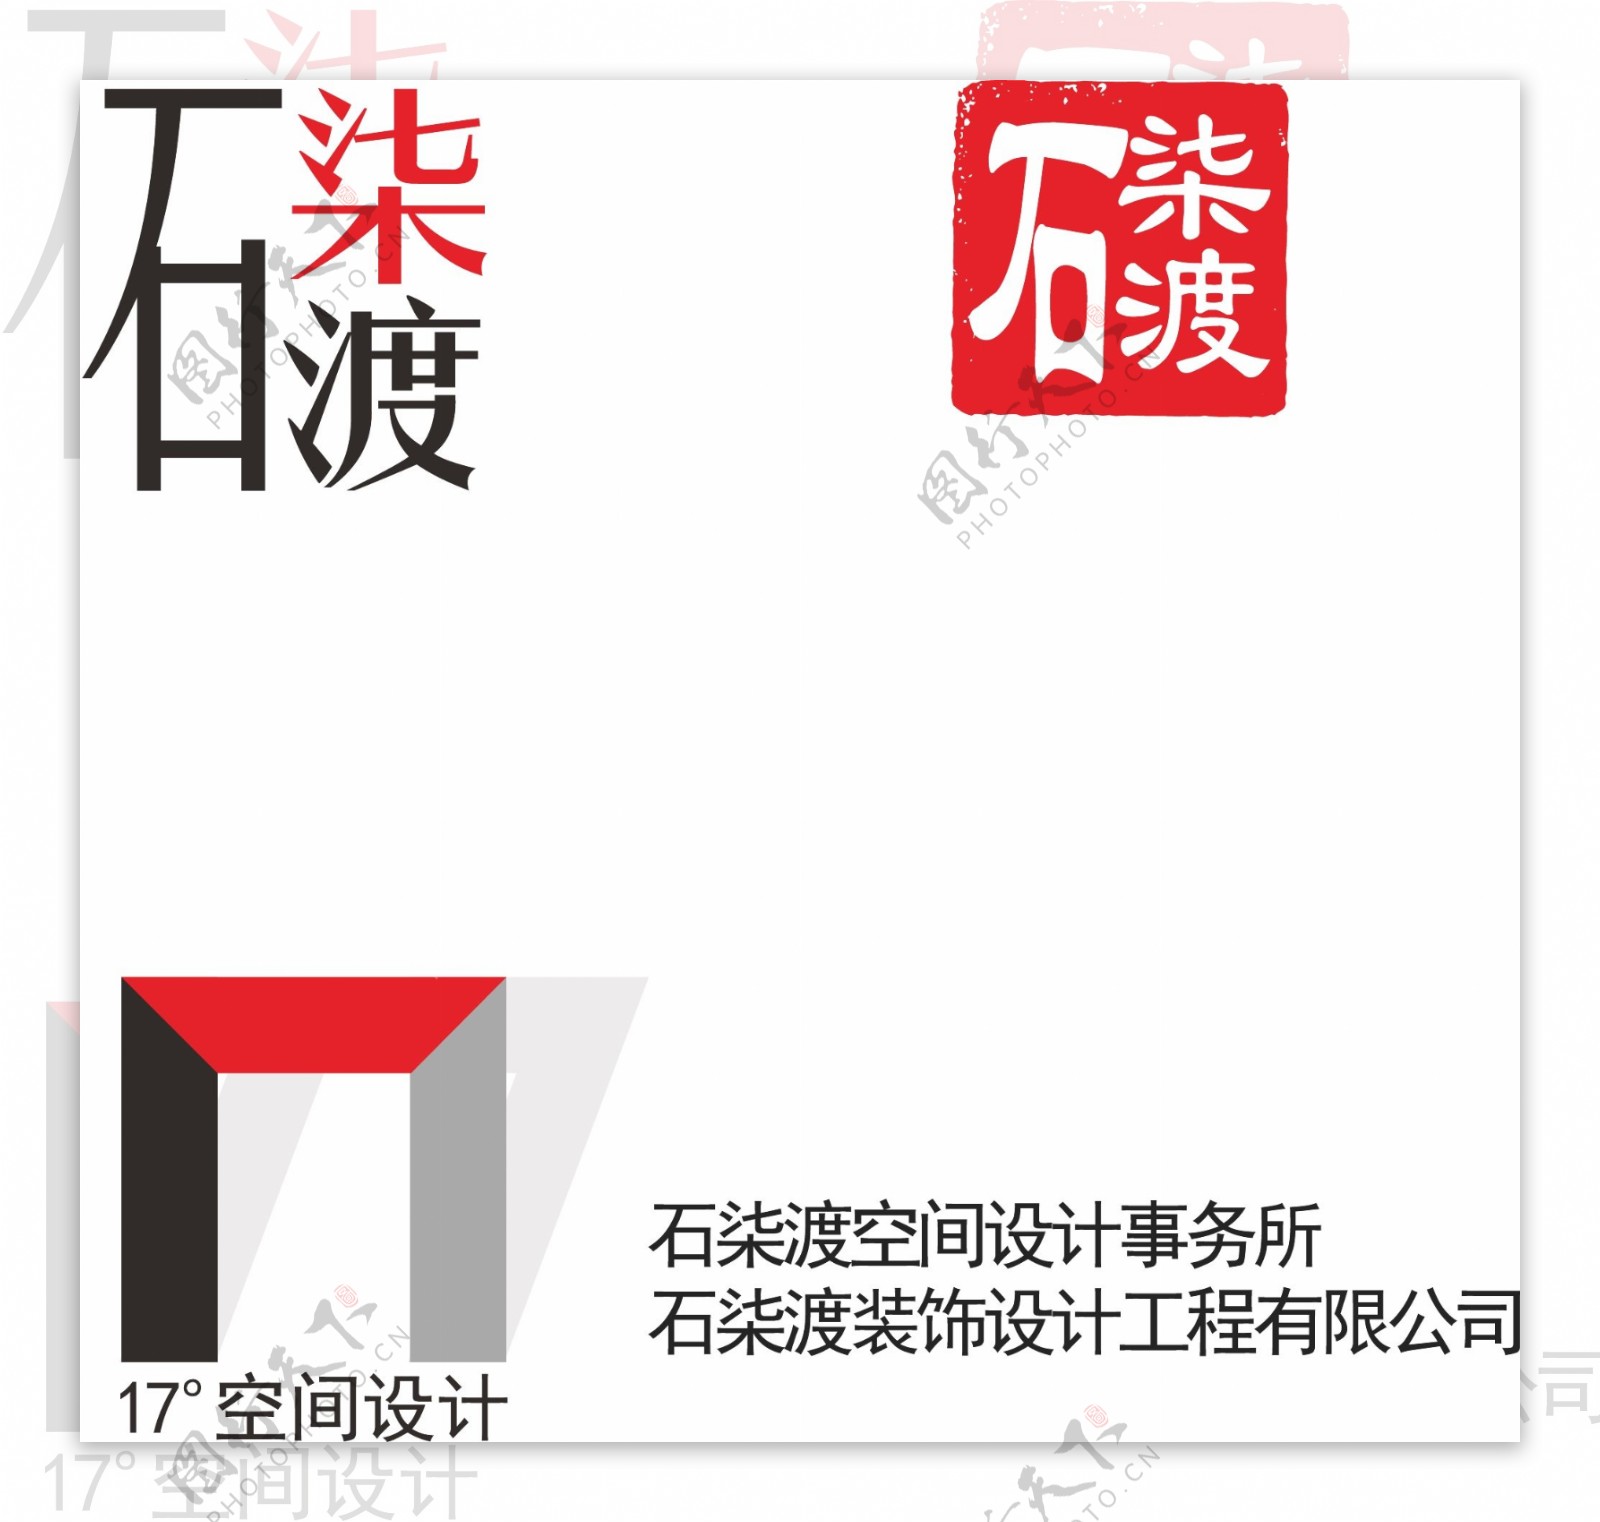 石柒渡logo